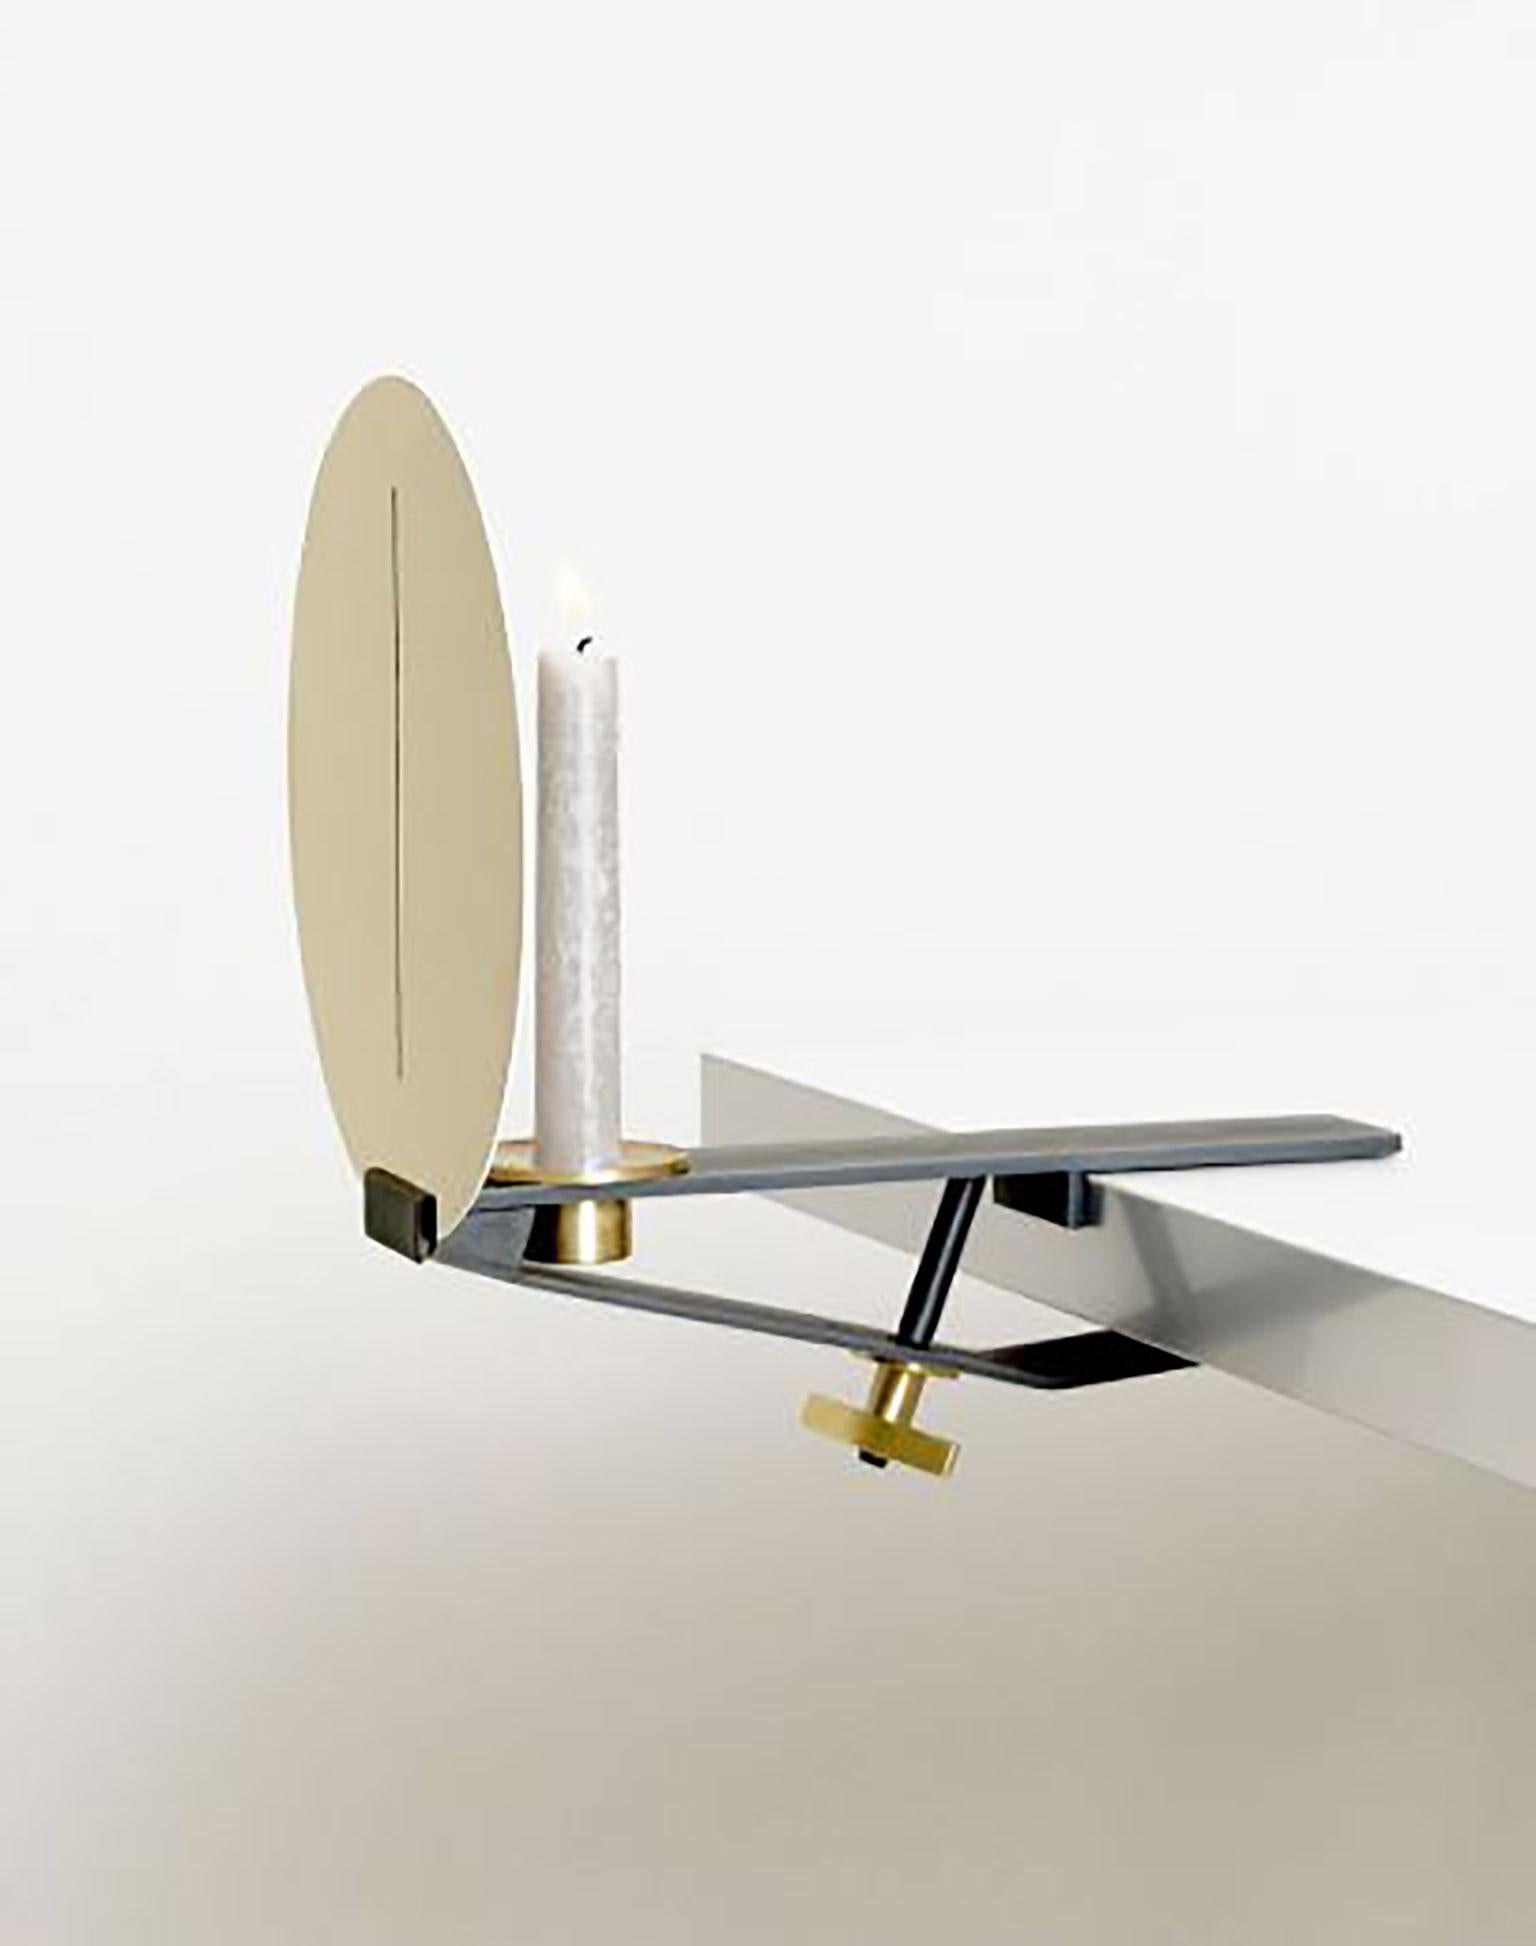 Sera Clamp conçu par Aldo Parisotto & Massimo Formenton pour Mingardo fait partie de la catégorie des meubles. Sera clamp est une lampe à bougie pour les intérieurs qui est principalement disponible dans la version à pince de table. La pince en fer